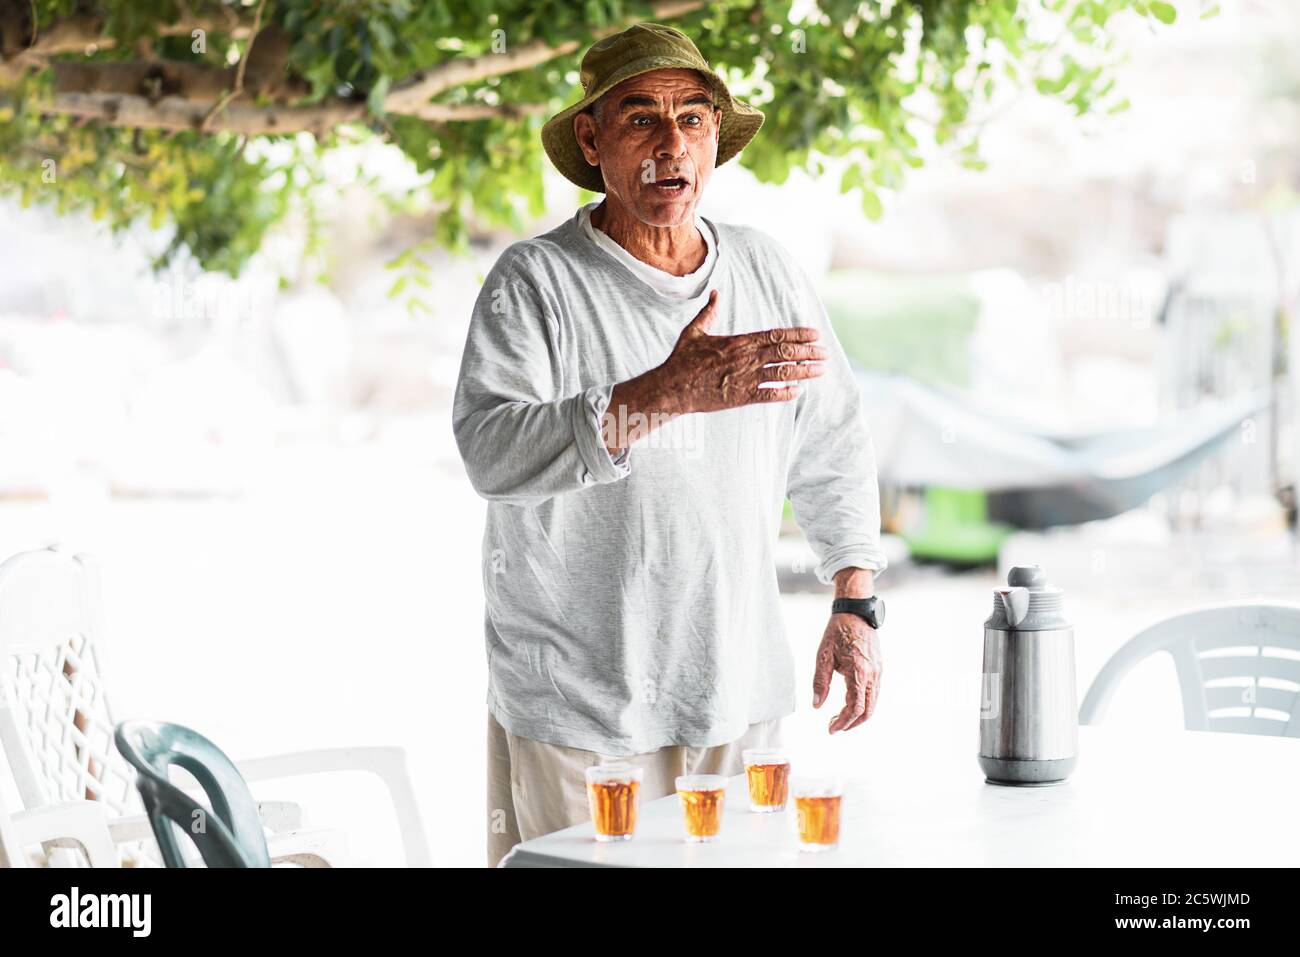 Gesunder aktiver älterer Mann, der im Freien redet und gestikuliert. Arabischer alter Mann streitet mit seinen Freunden, die neben dem Tisch mit traditionellem Tee stehen. Stockfoto